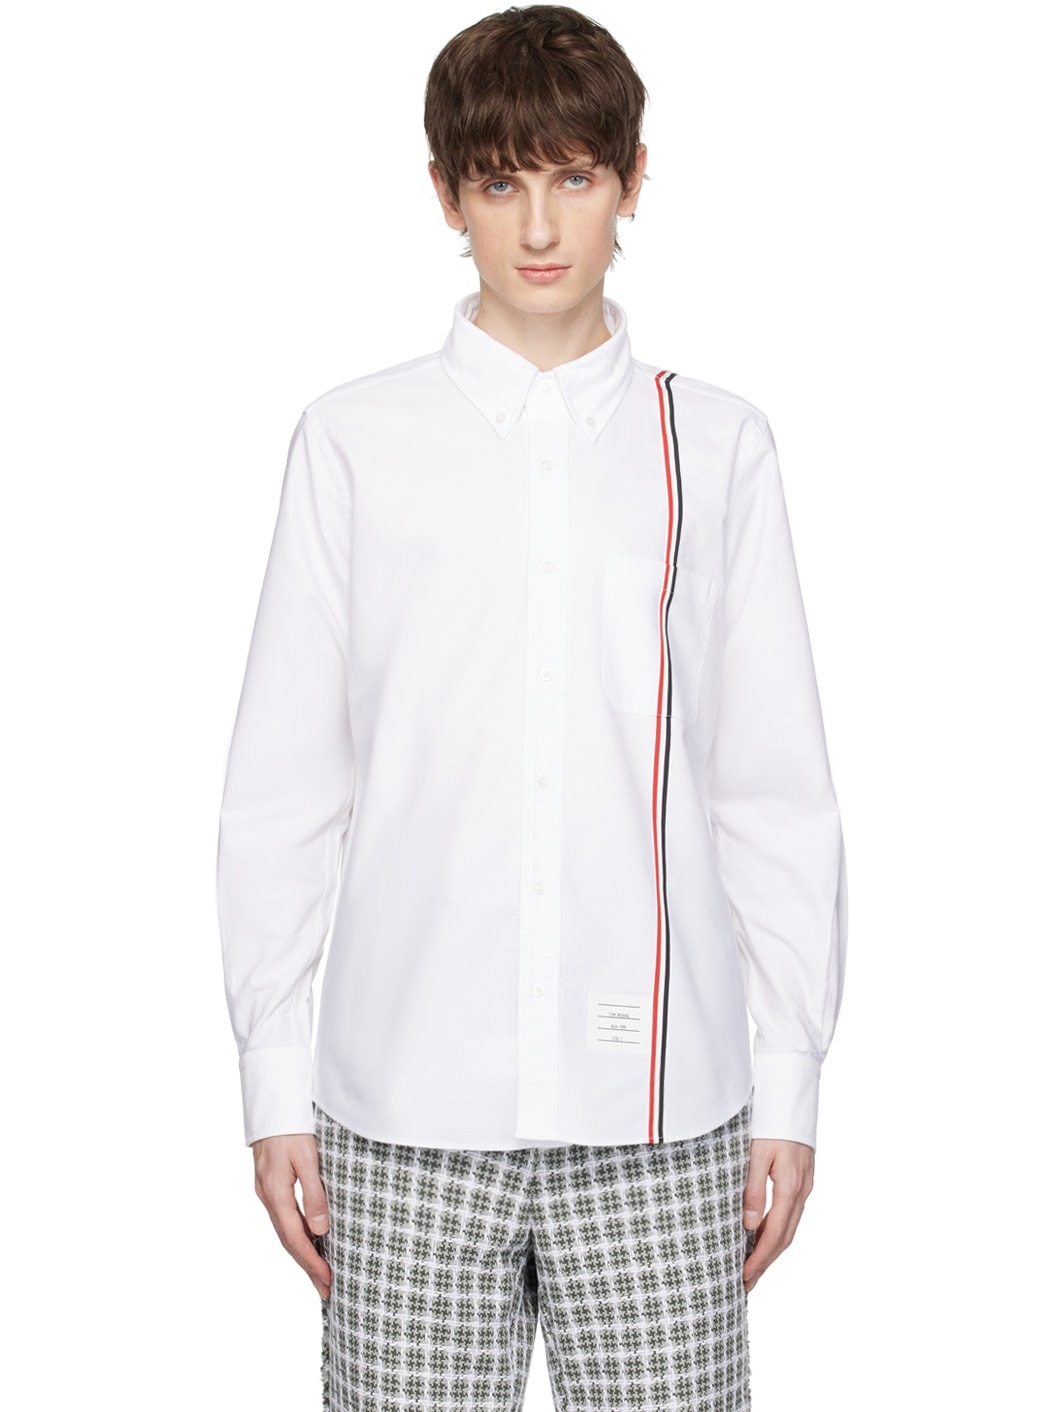 White Stripe Shirt - 1